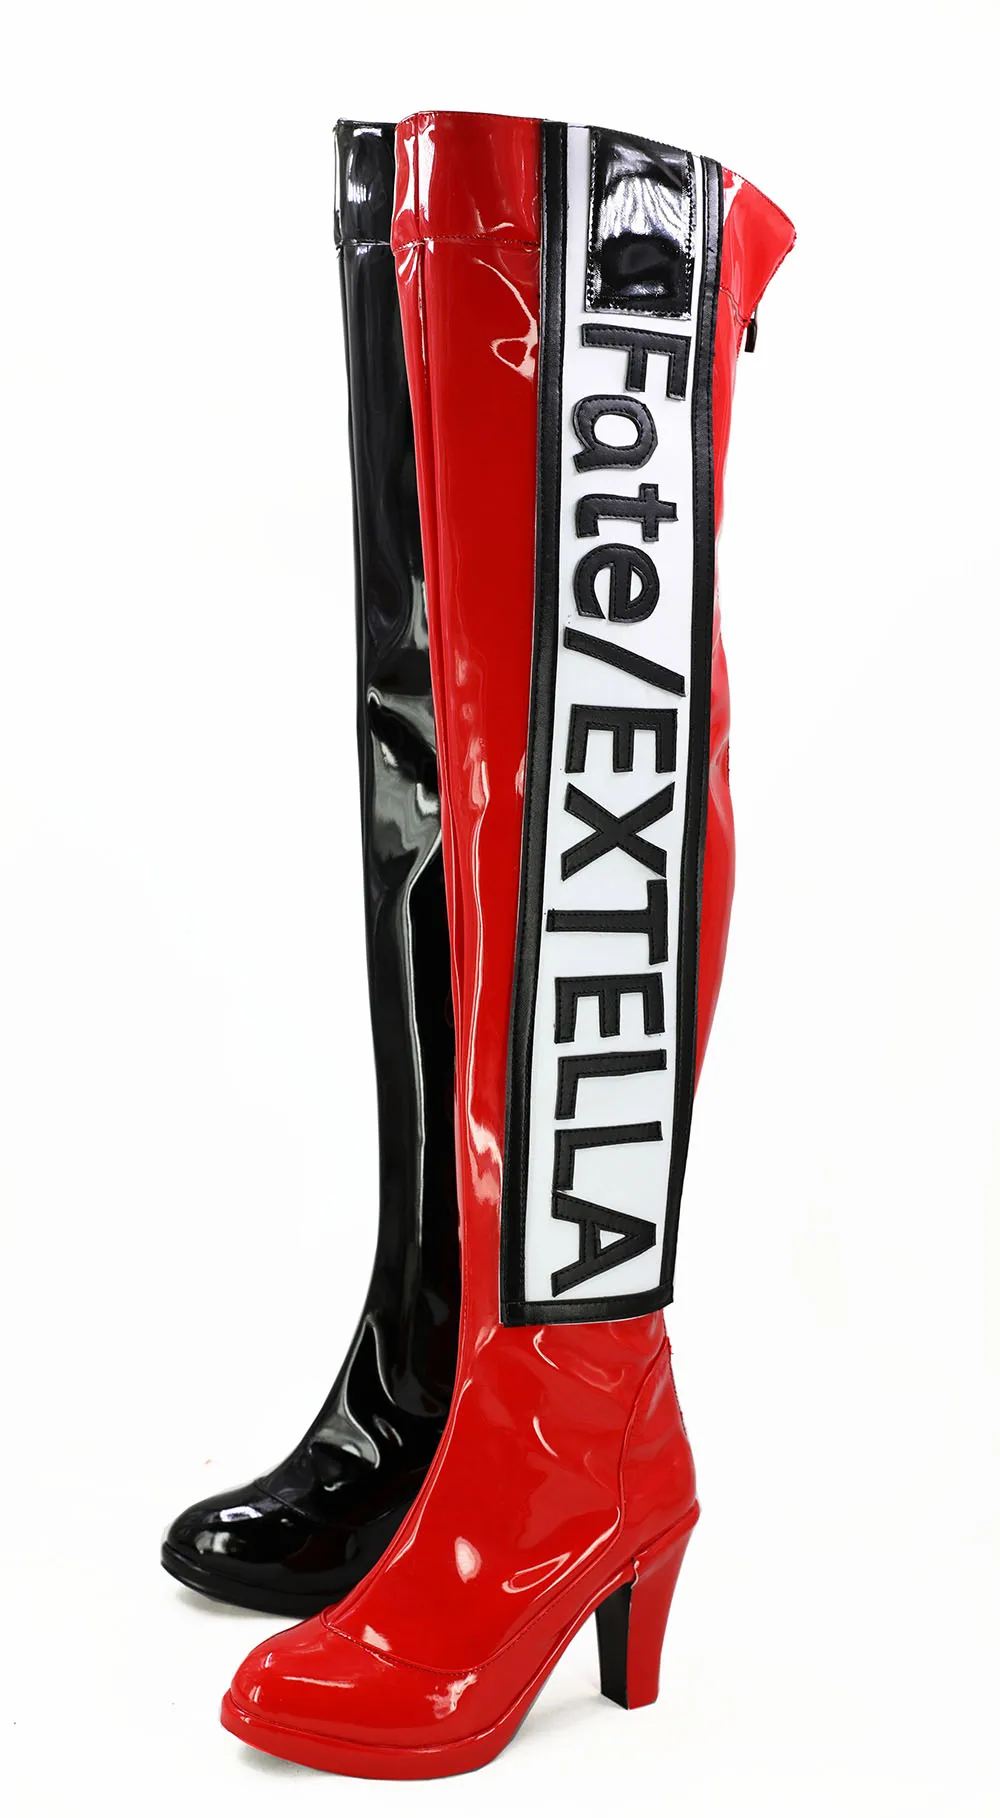 Fate/EXTELLA EXTRA Racing Nero ботинки для косплея обувь на высоком каблуке, изготовленный на заказ любой размер